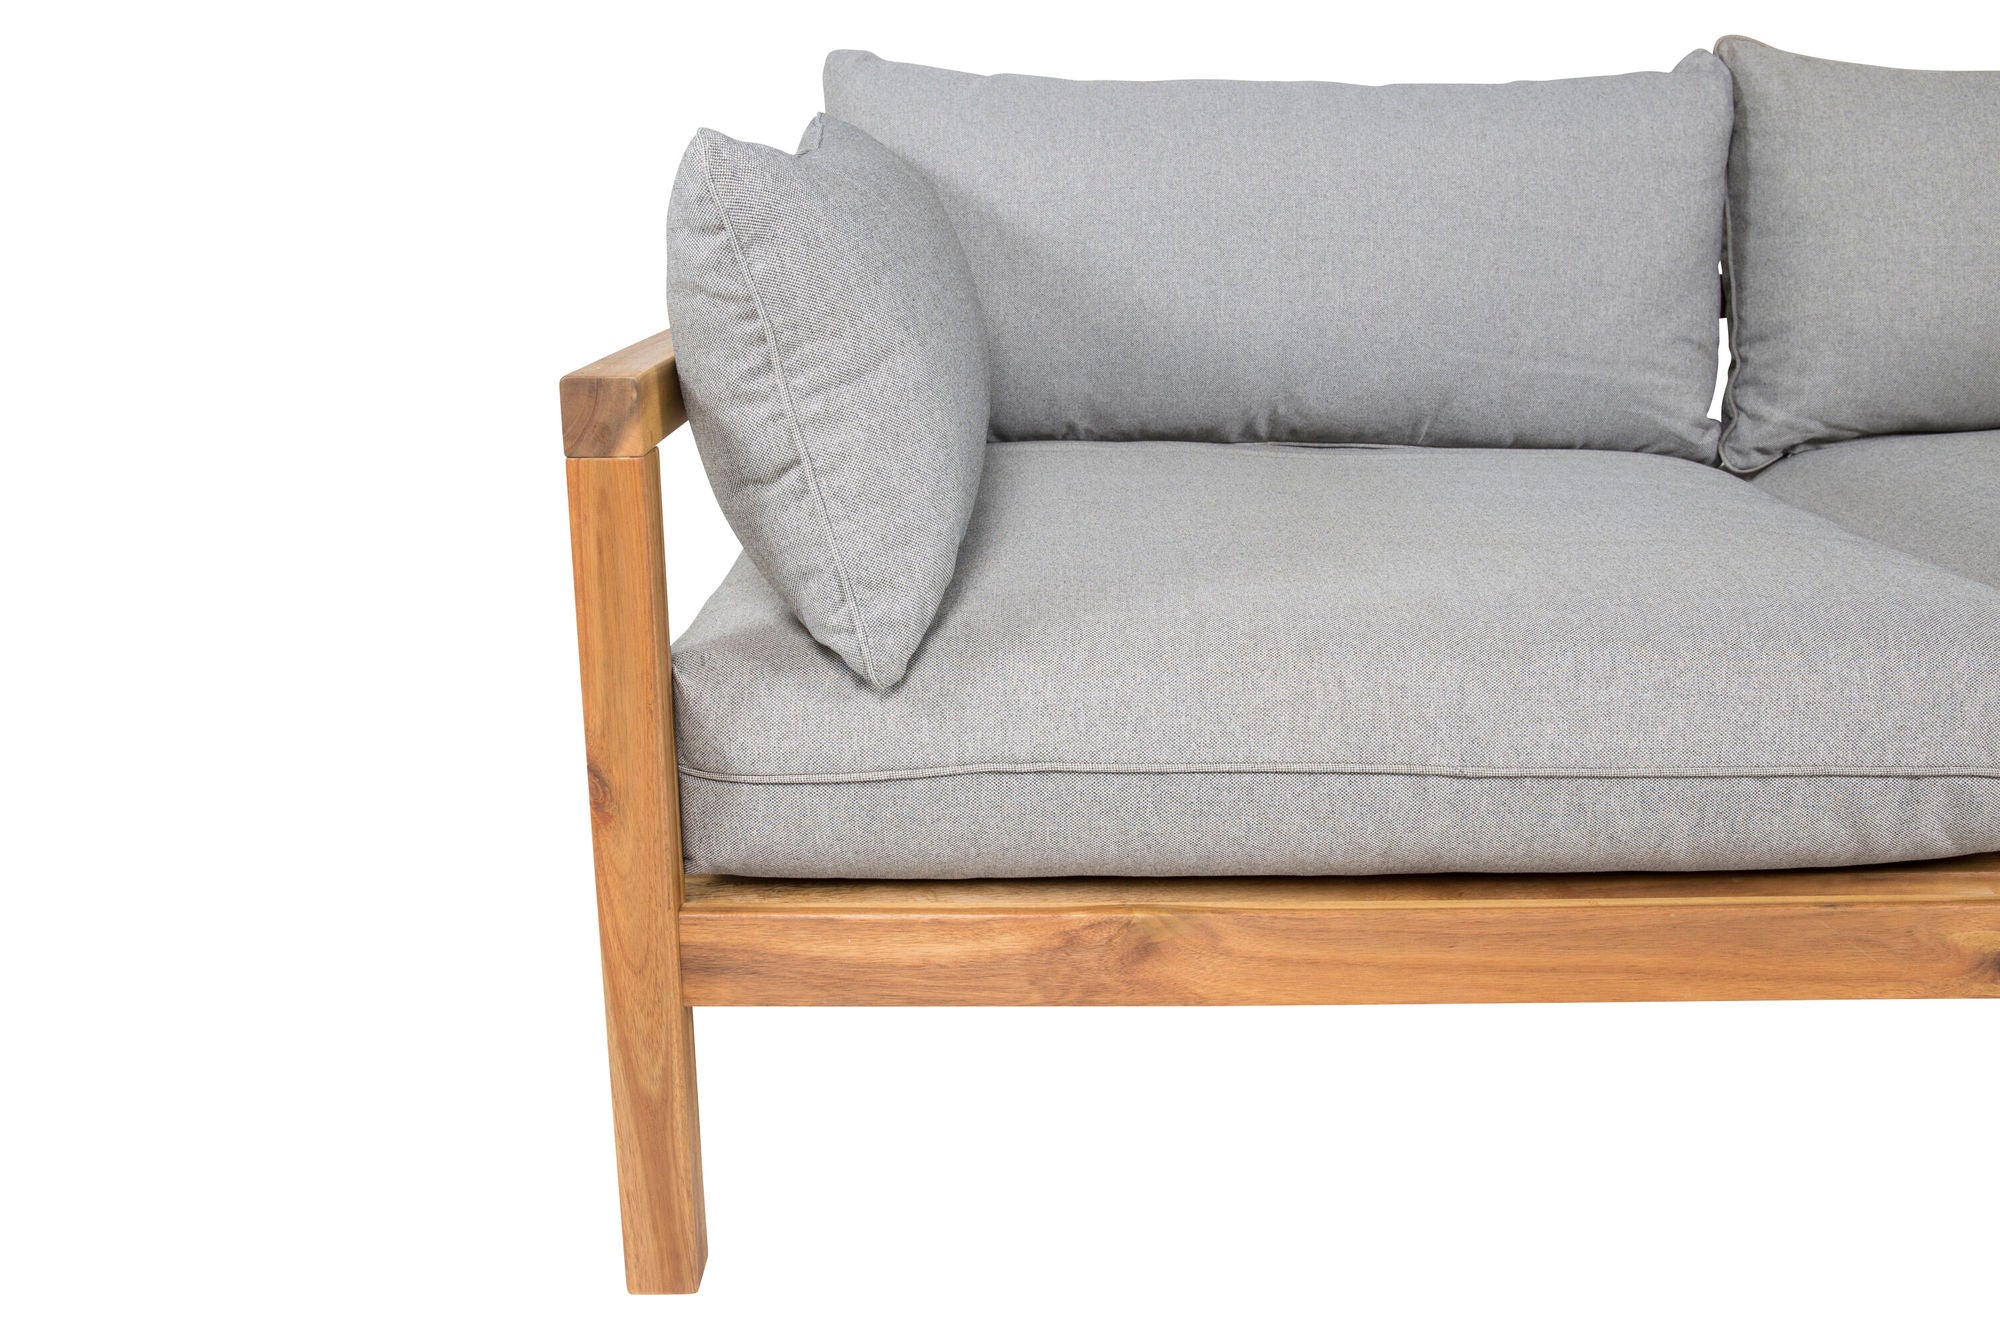 Venture Home Marion Double Sofa Bench - Grey Fabric / Acacia